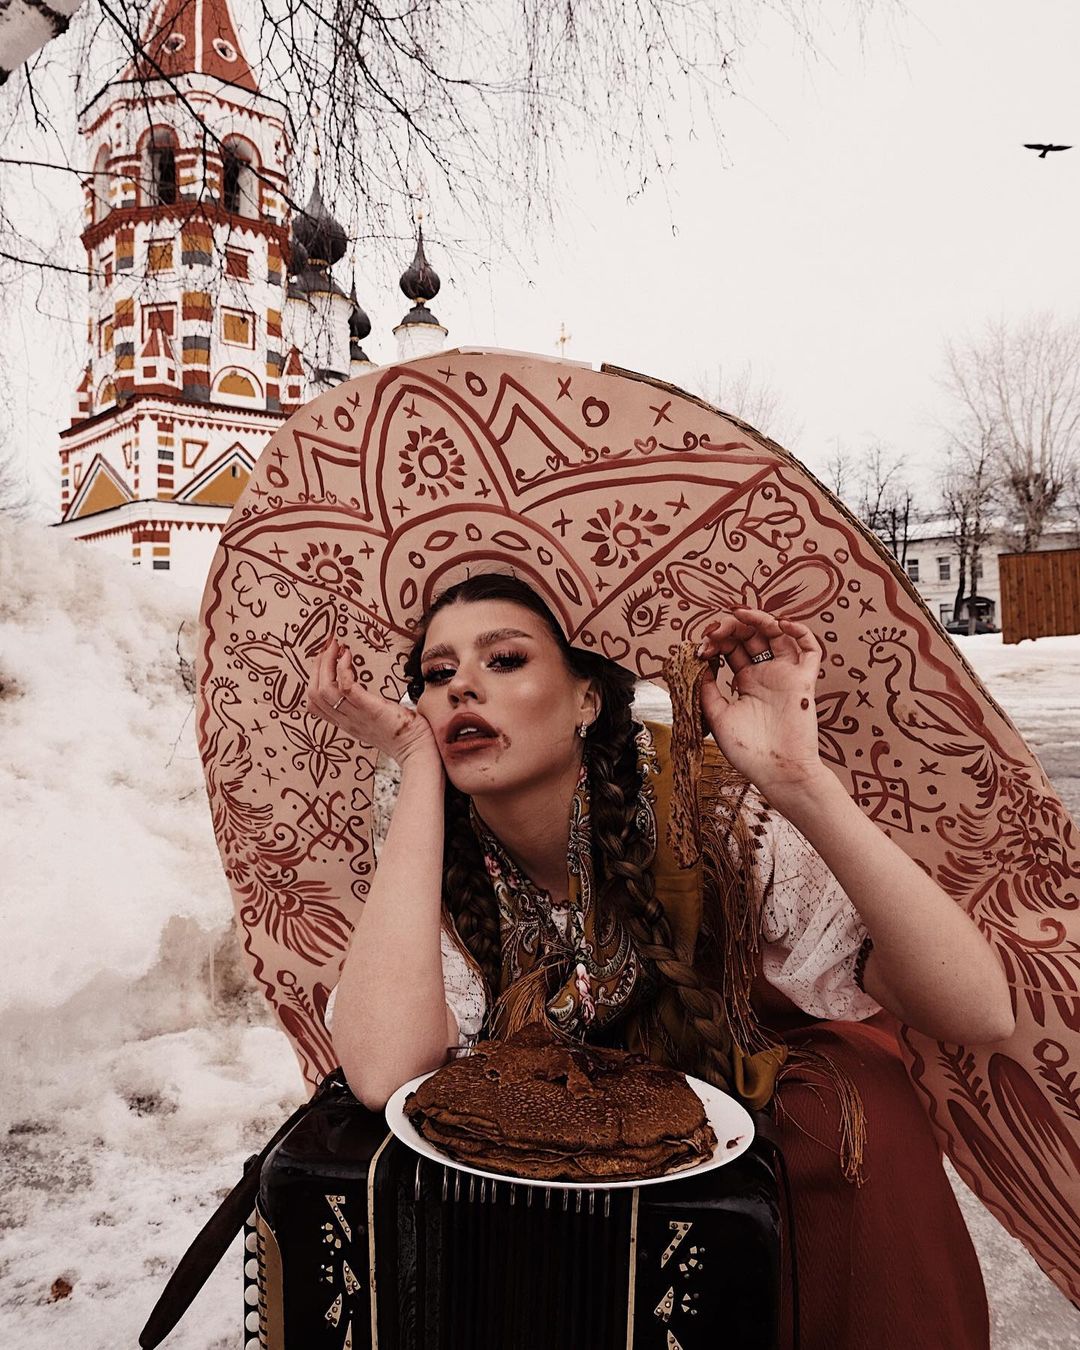 Весенний стиль по-суздальски. Собираем образ русской Масленицы с фэшн-фотографом Максом Сухаревским.